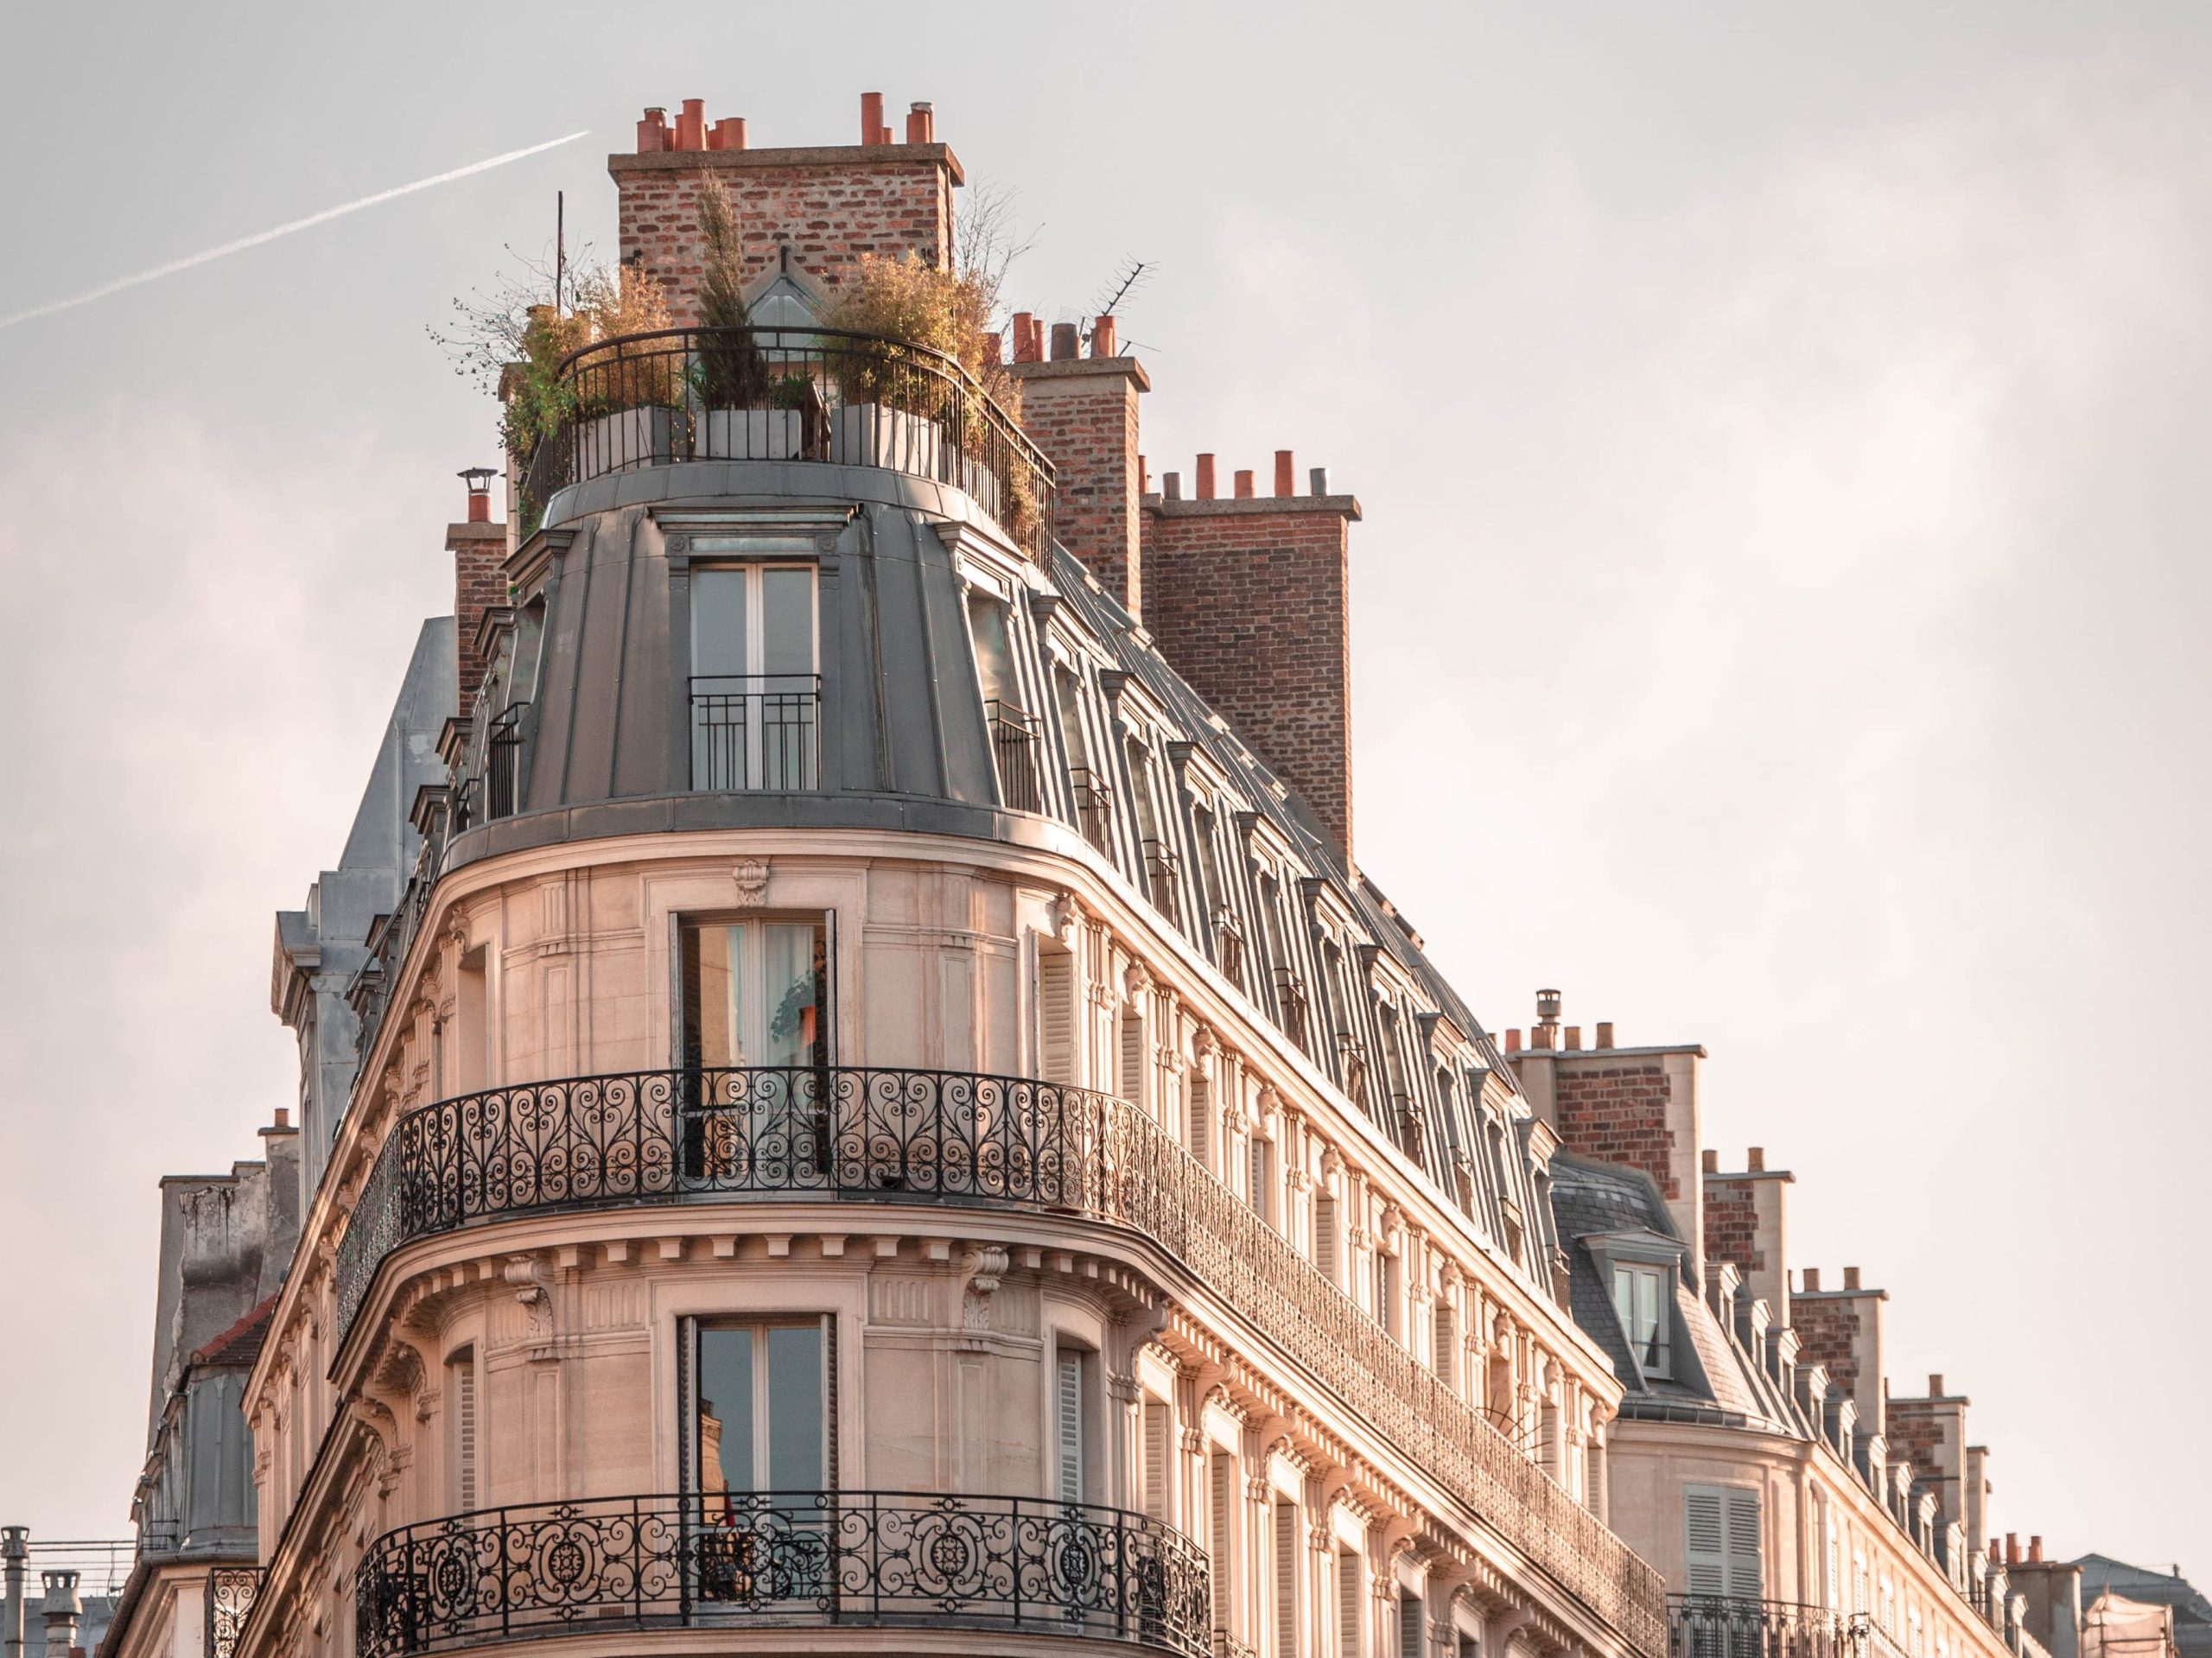 Parisian building tourism
